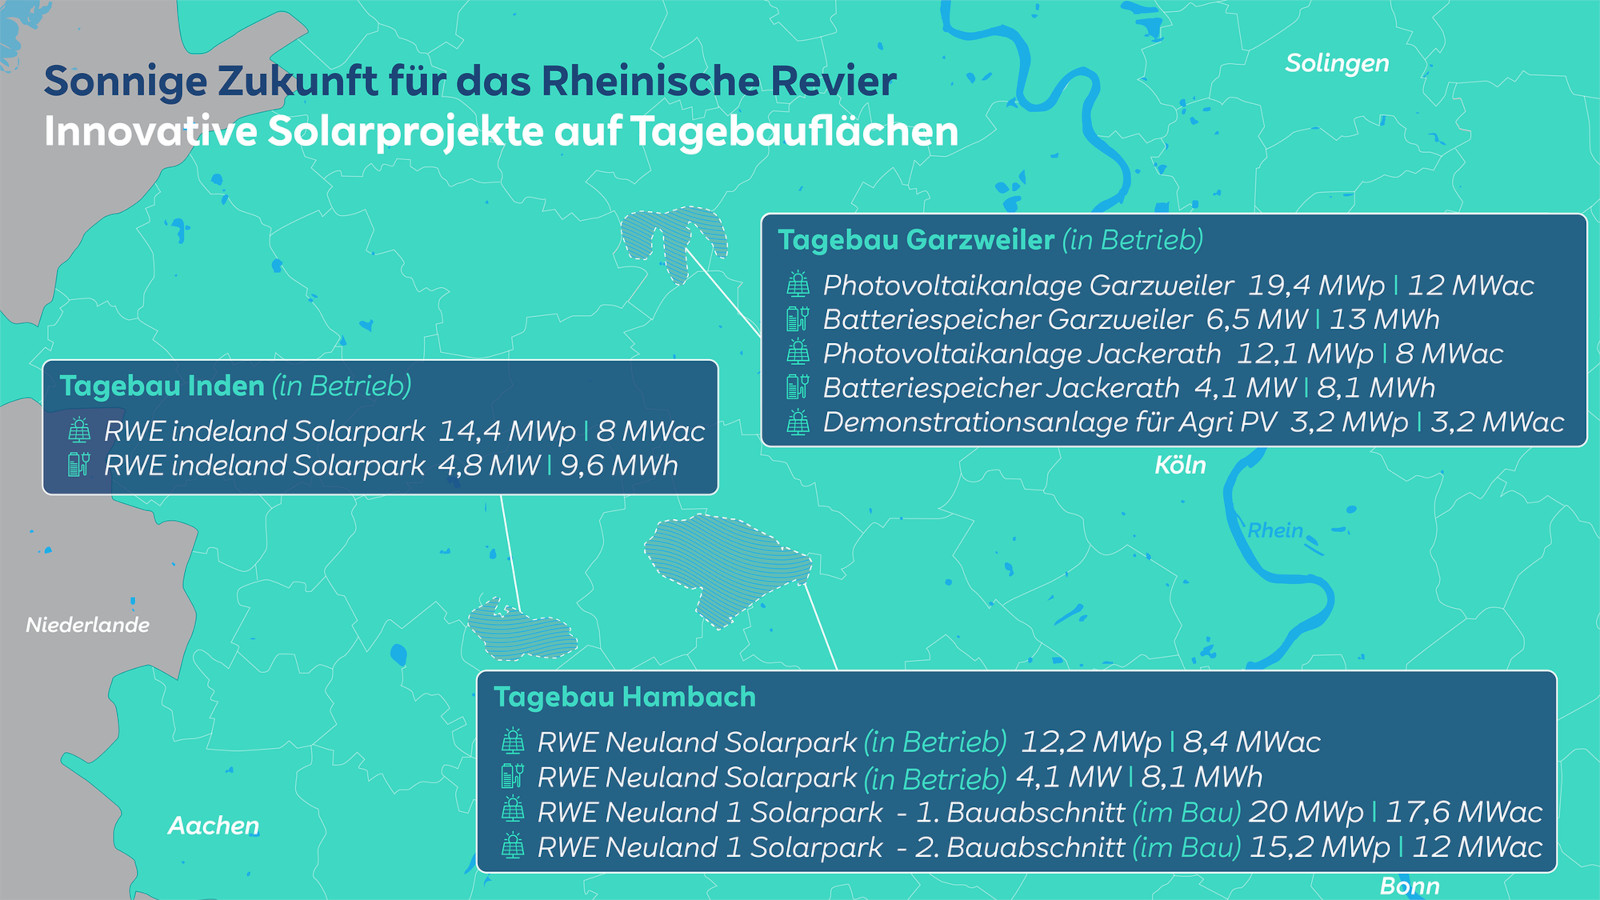 Sonnige Zukunft für das Rheinische Revier | RWE